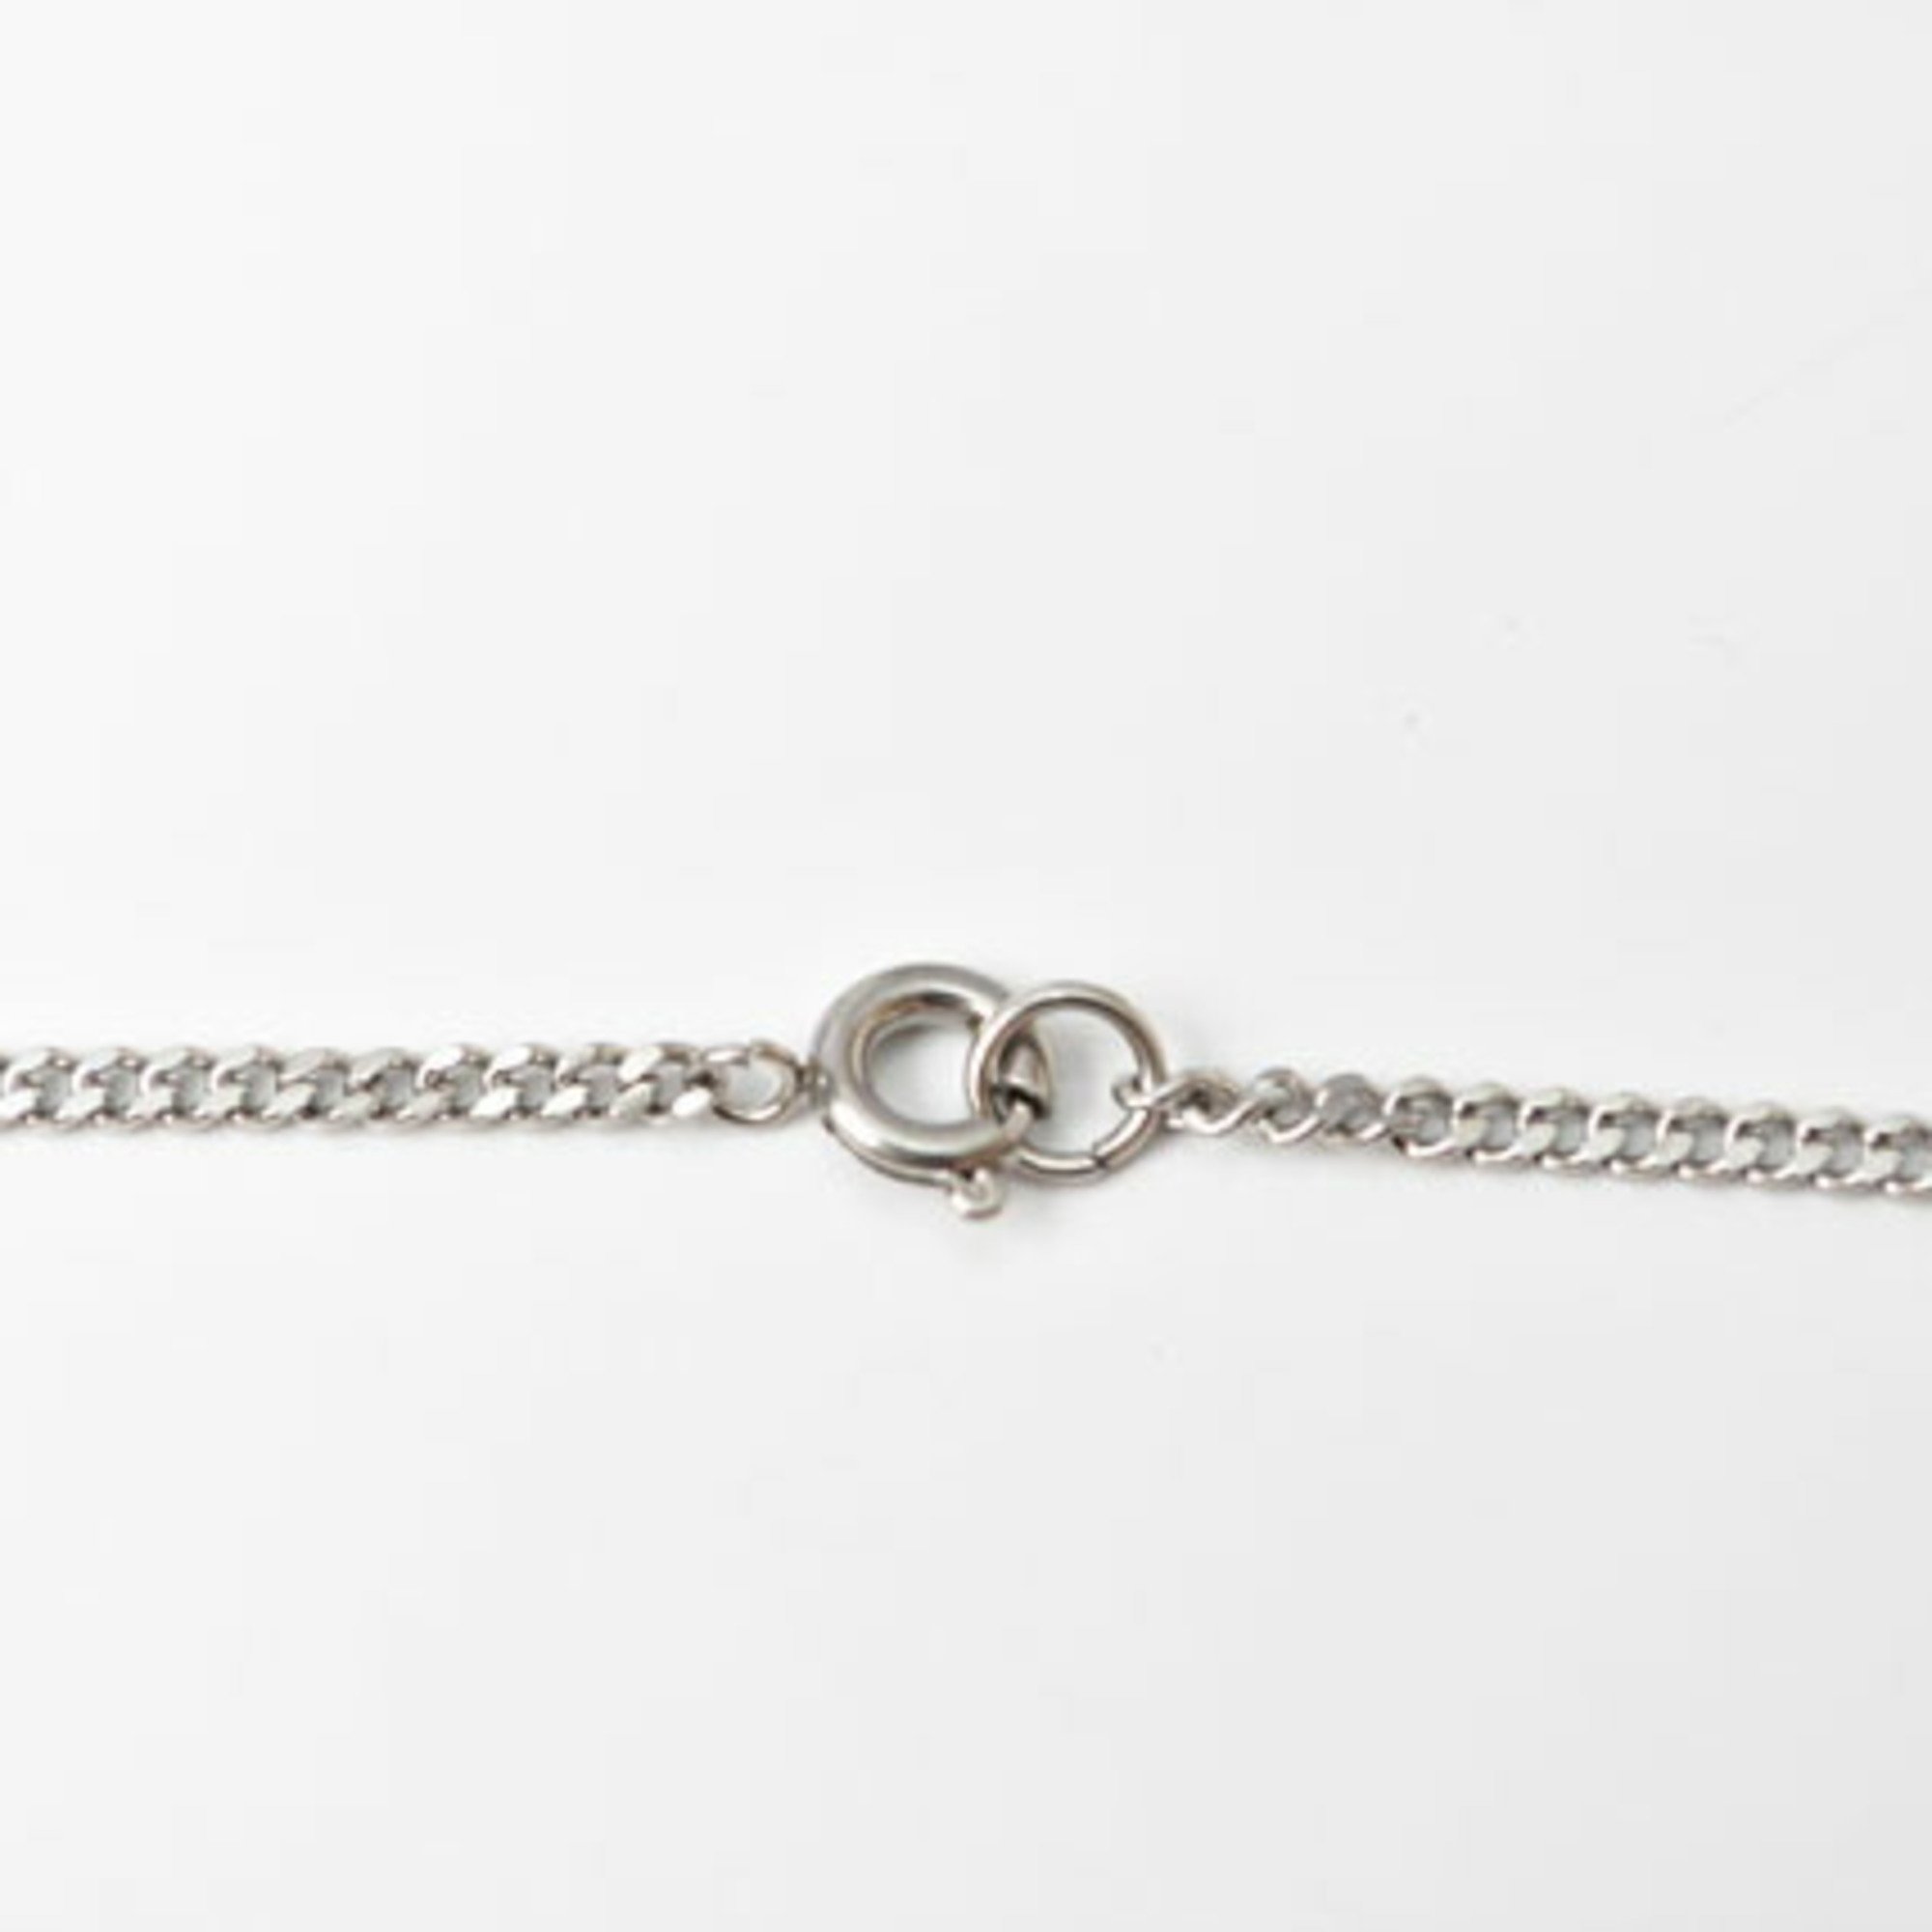 CHANEL Necklace Pendant Coco Mark Rhinestone Silver Light Gold